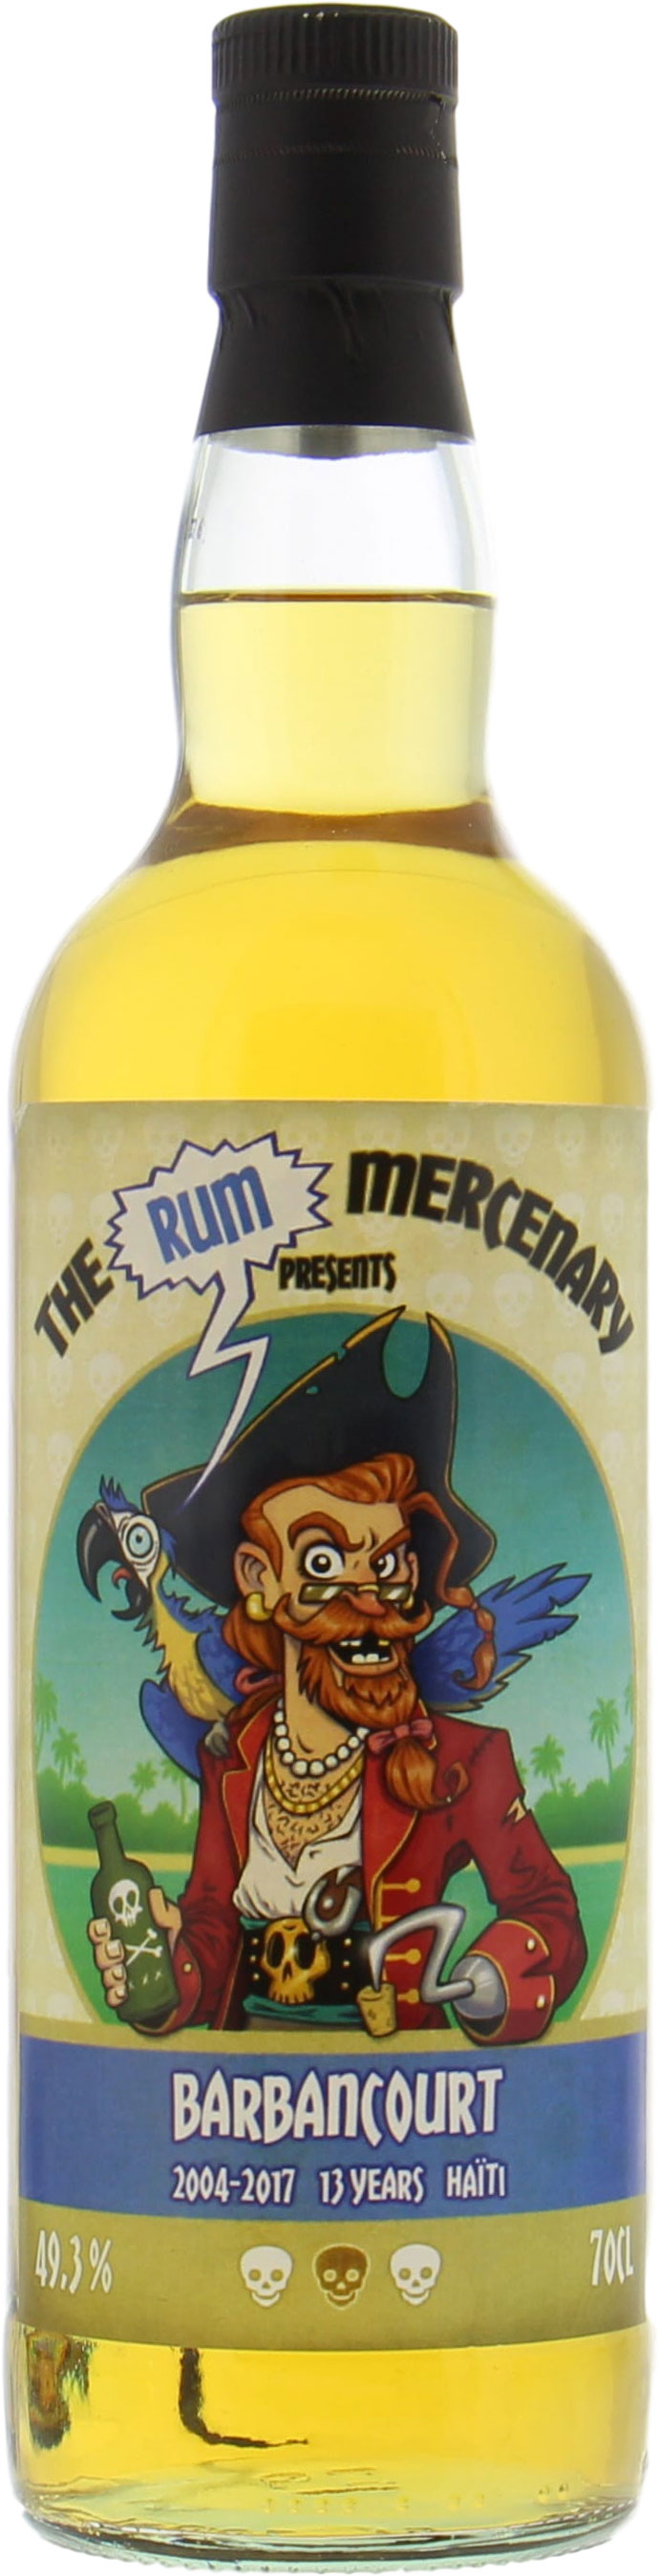 Barbancourt - 13 Years Old The Rum Mercenary 49.3% 2004 Perfect